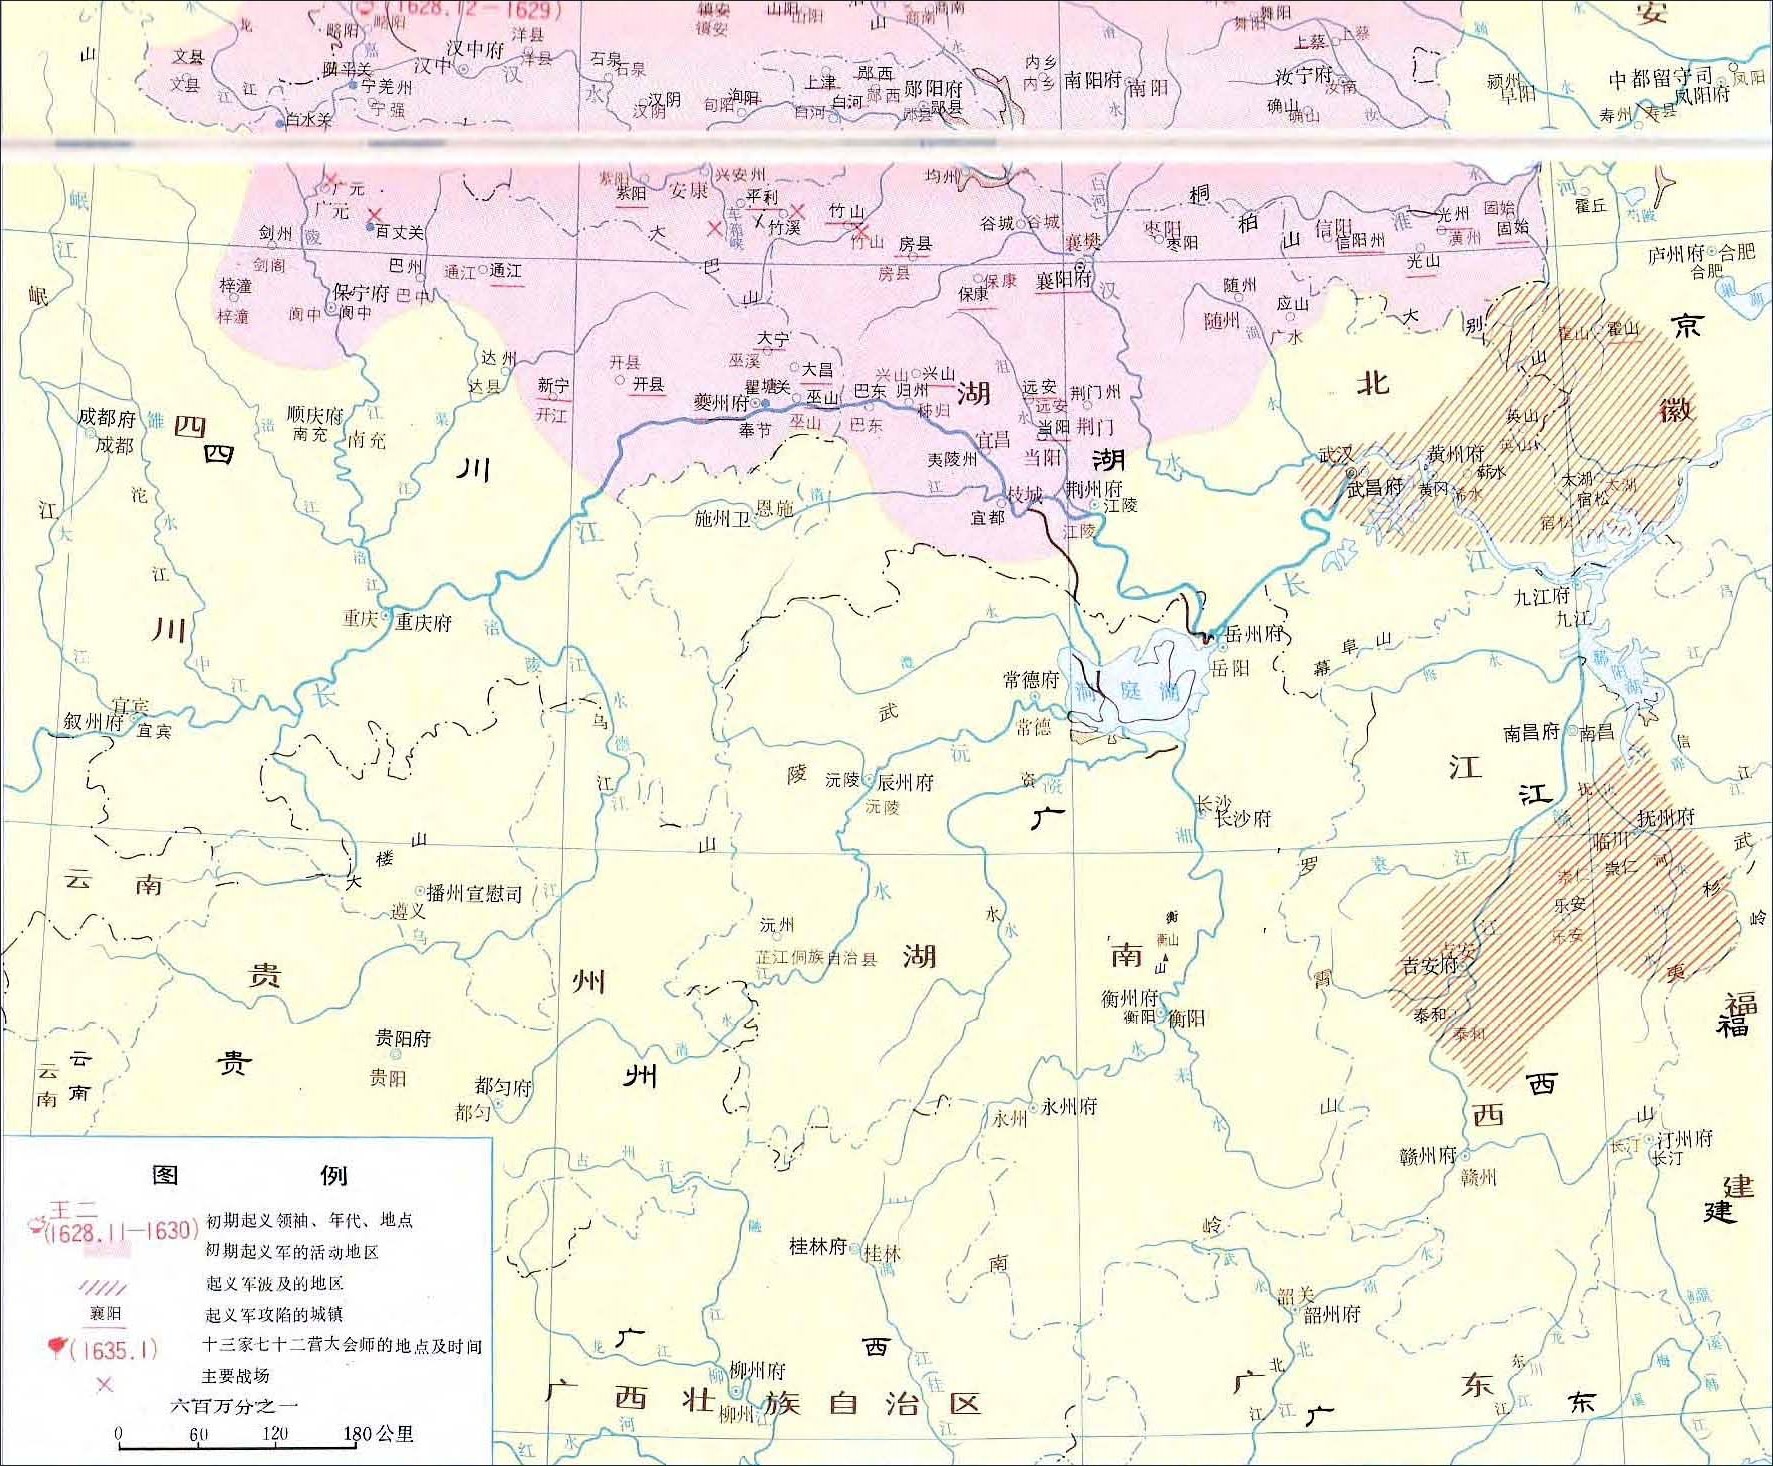 明末农民大起义初期形势1_中国史稿地图查询图片